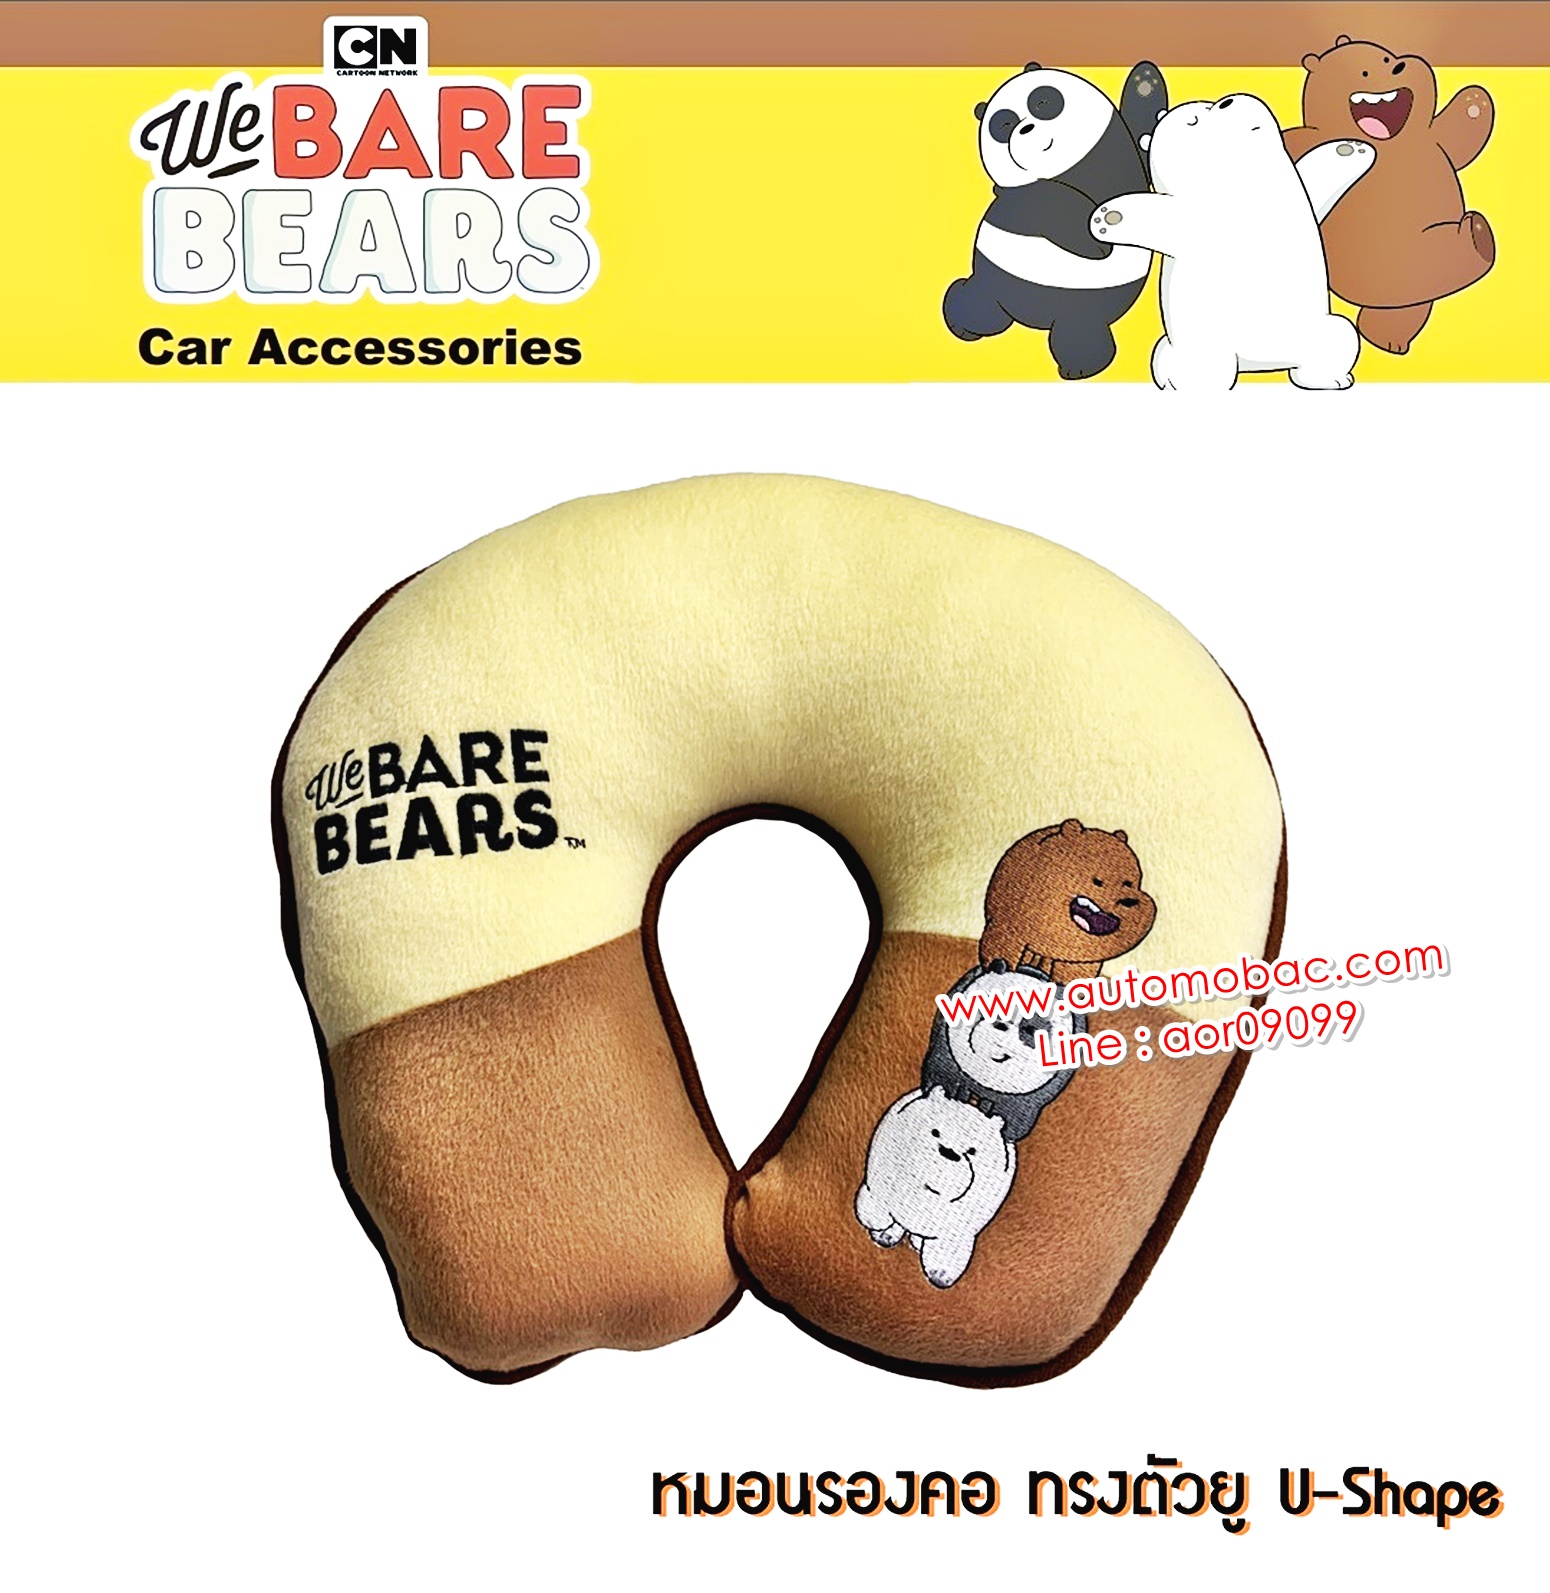 We Bare Bears v2 หมีจอมป่วน สีครีม หมอนรองคอ ทรงตัวยู 1 ใบ Neck Rest Cushion U-Shape ใช้ได้ทั้งในบ้า